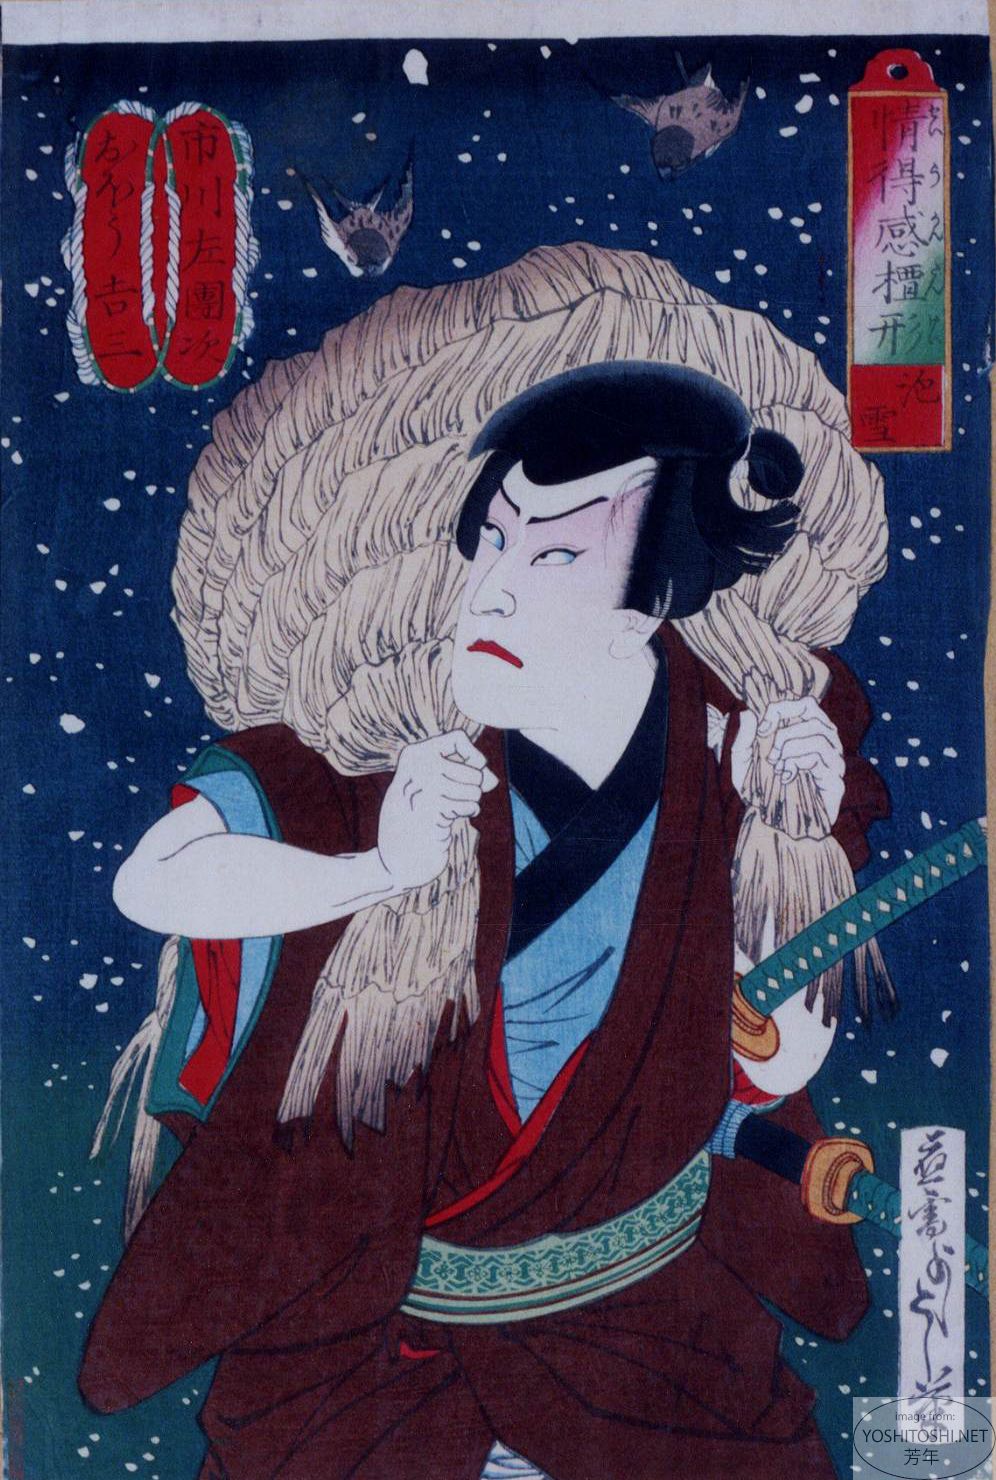 Yoshitoshi - Light snow: Ichikawa Sadanji as Obō Kichiza - Barometer of Emotions